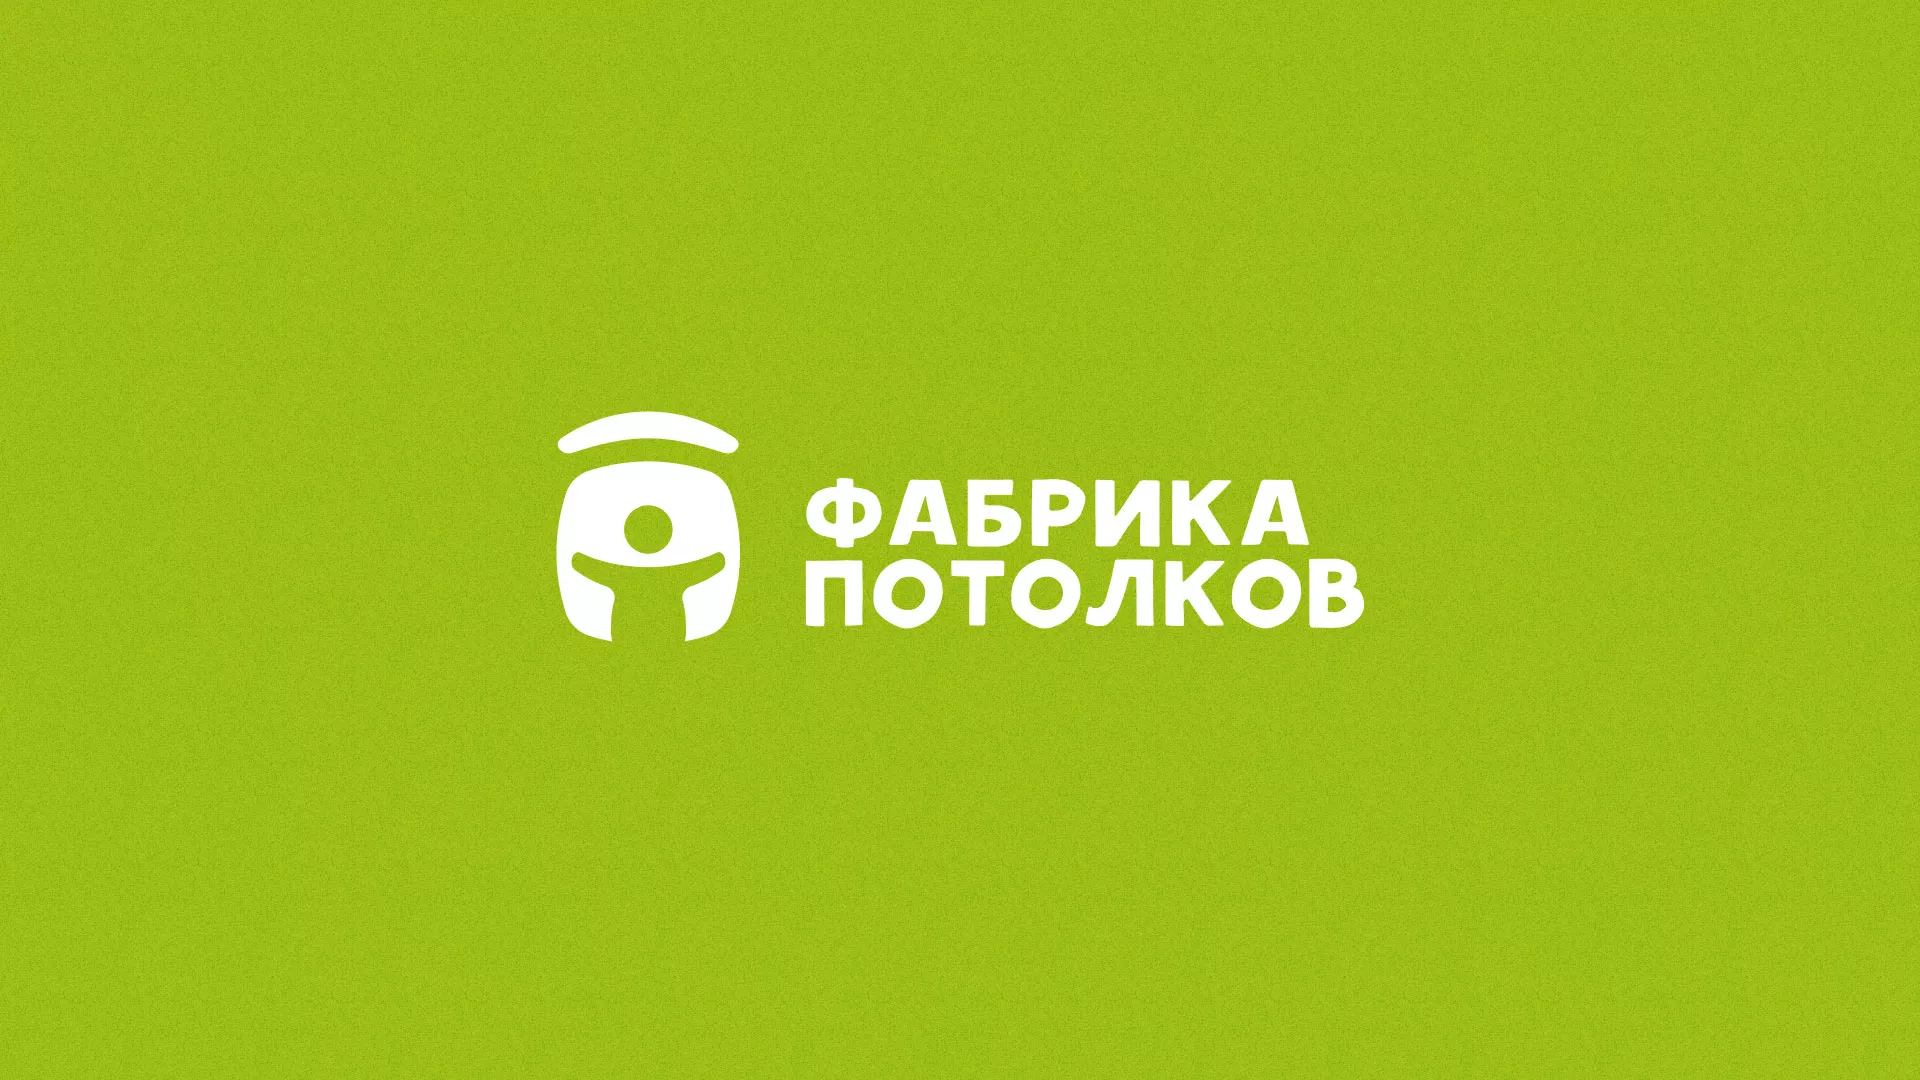 Разработка логотипа для производства натяжных потолков в Гремячинске